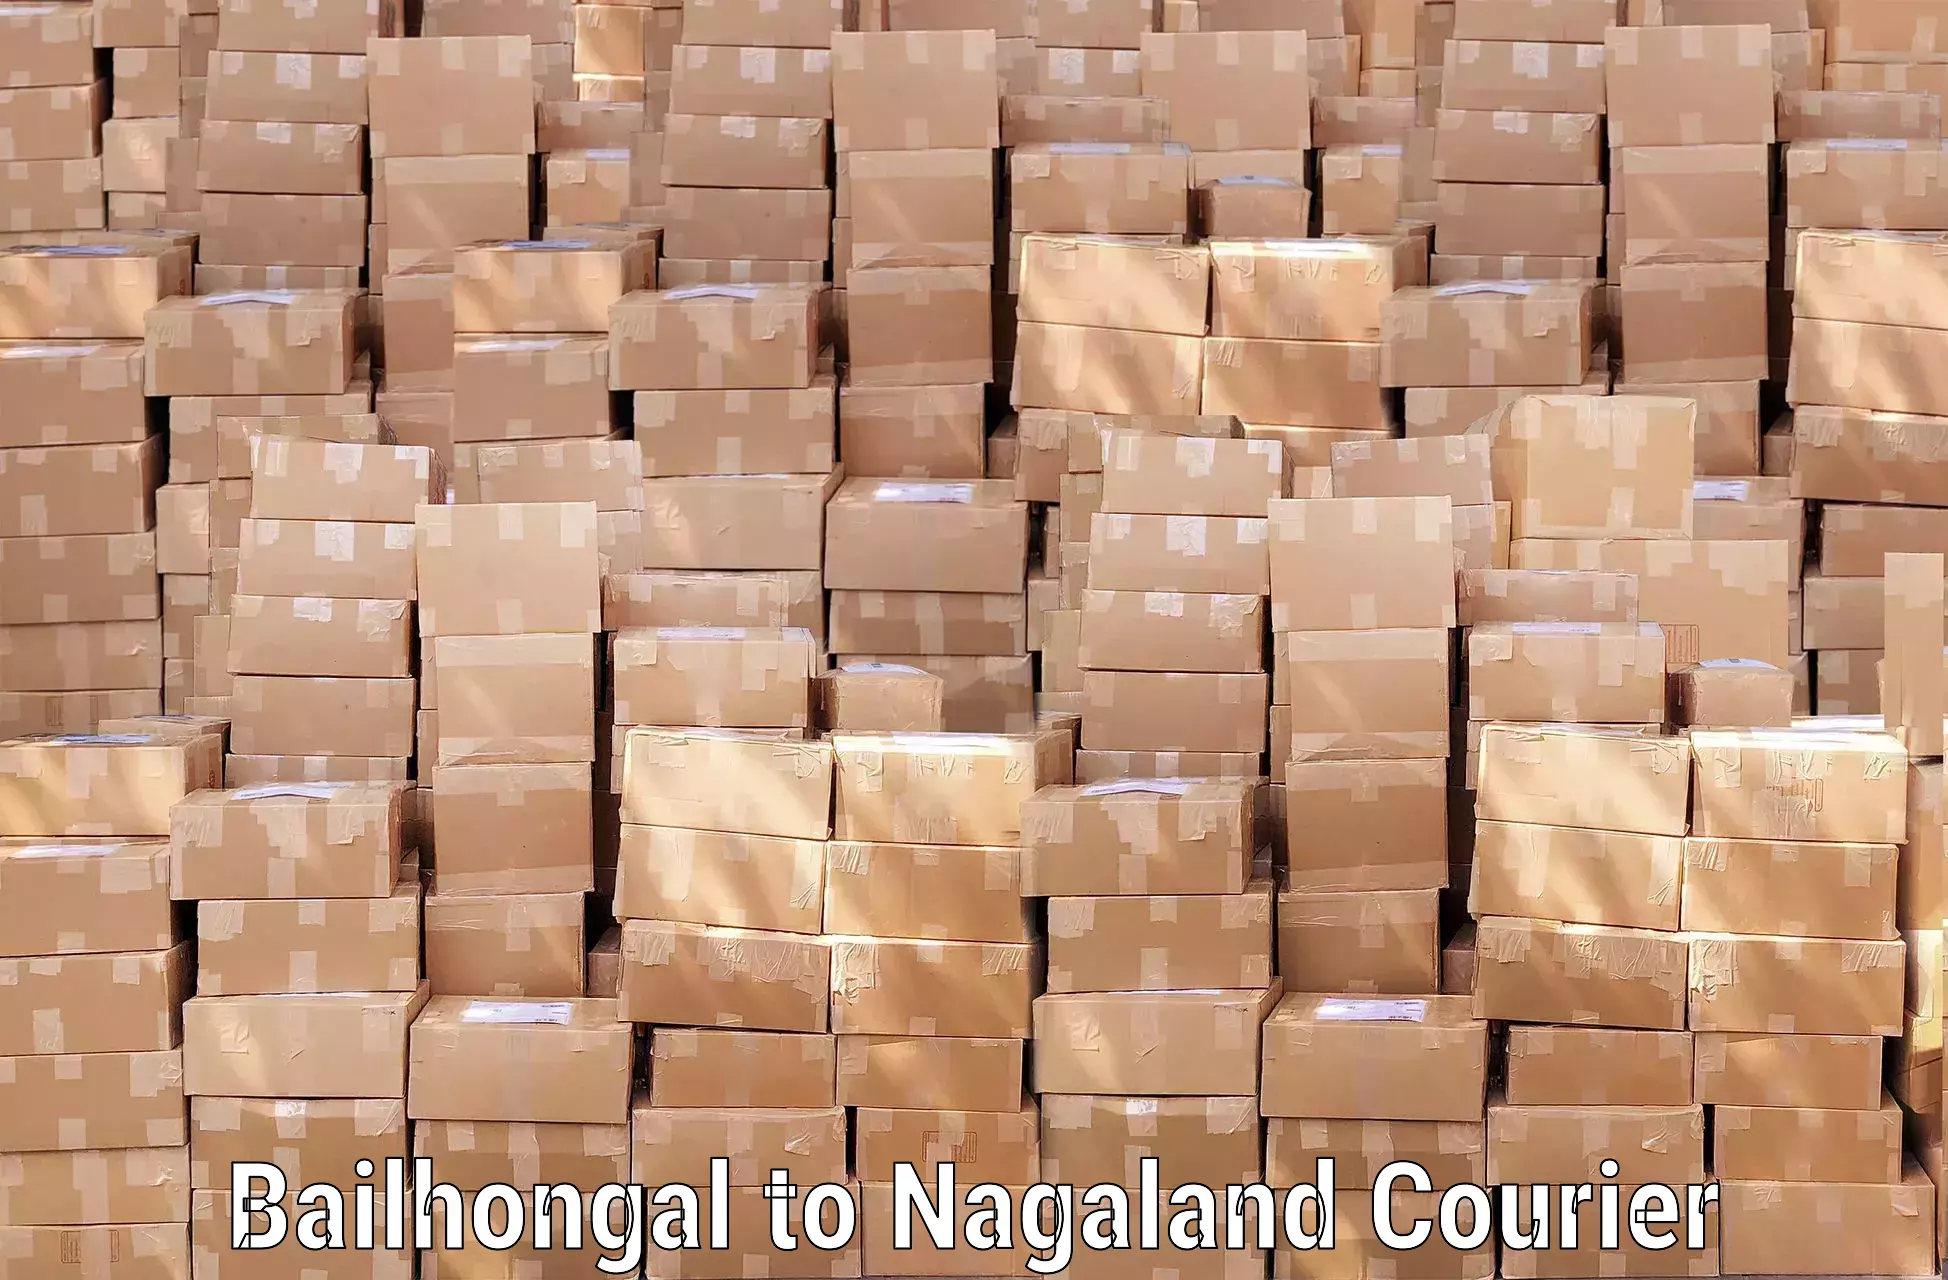 Baggage shipping rates calculator Bailhongal to Nagaland